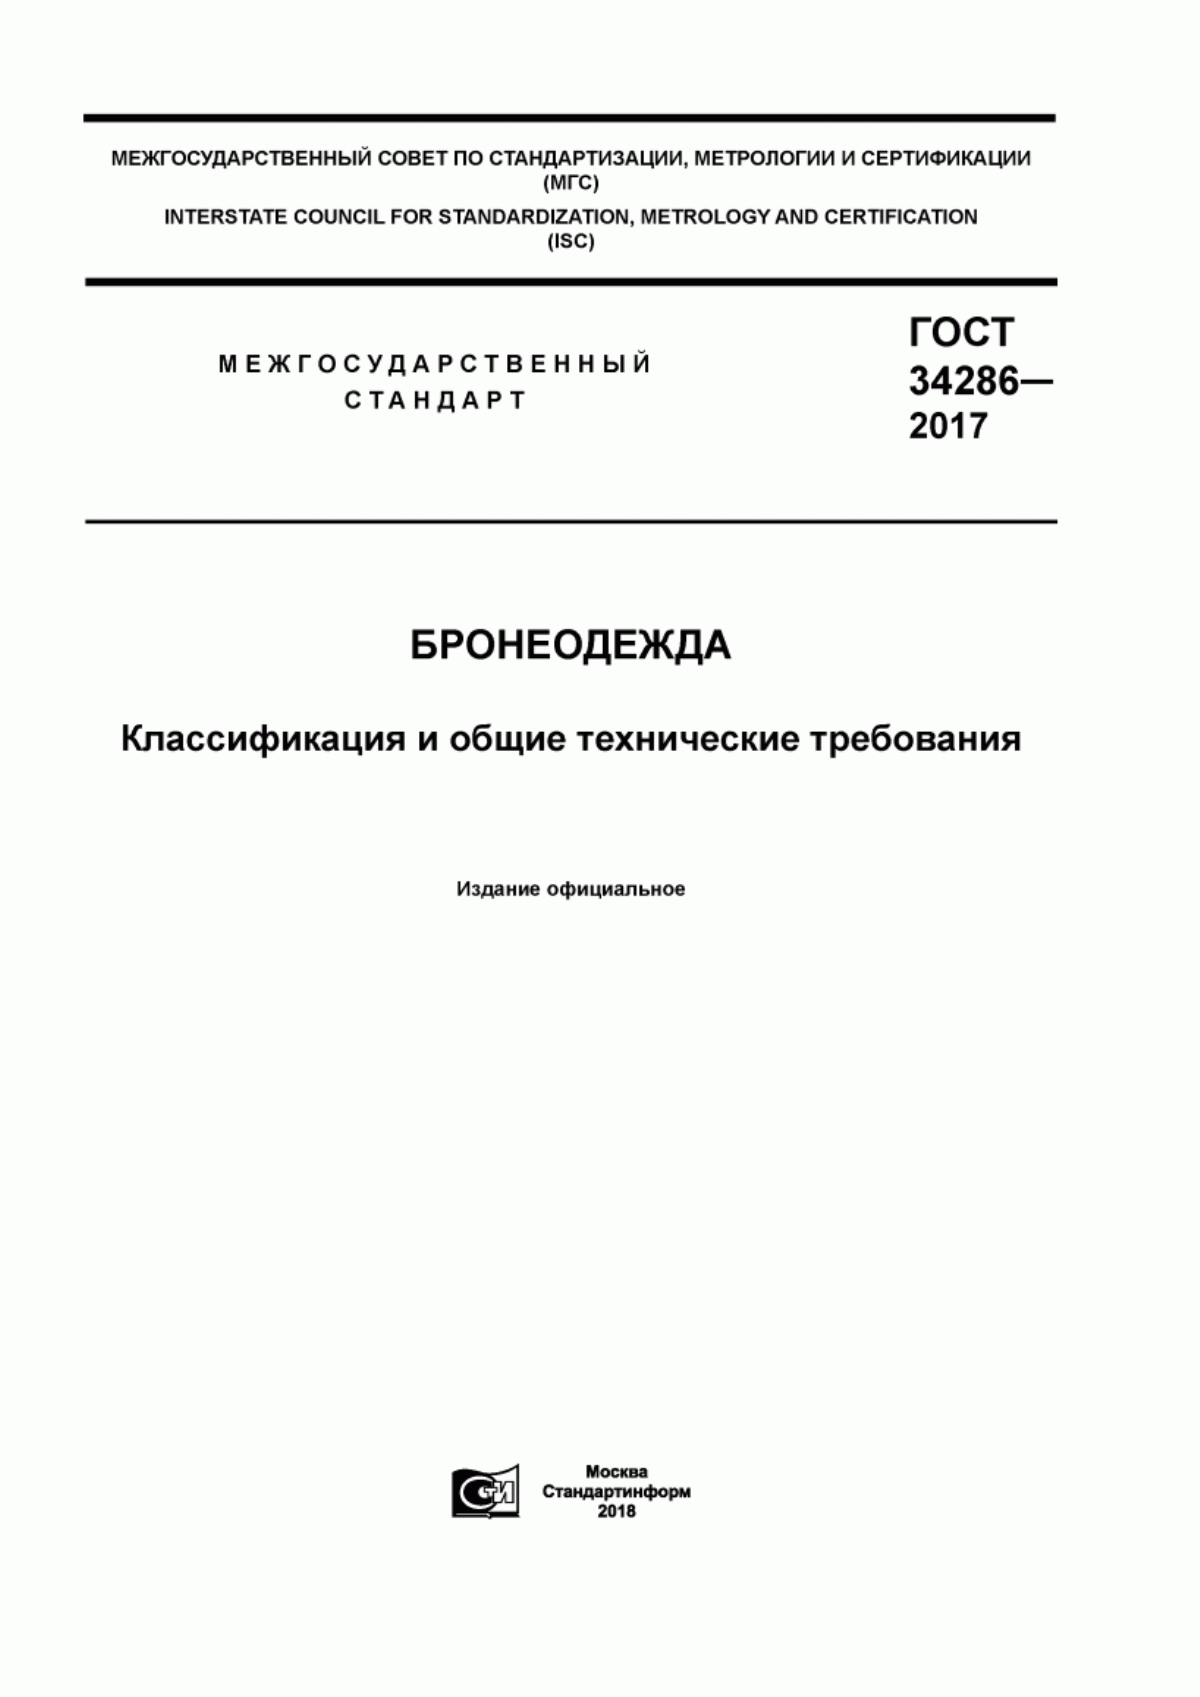 ГОСТ 34286-2017 Бронеодежда. Классификация и общие технические требования